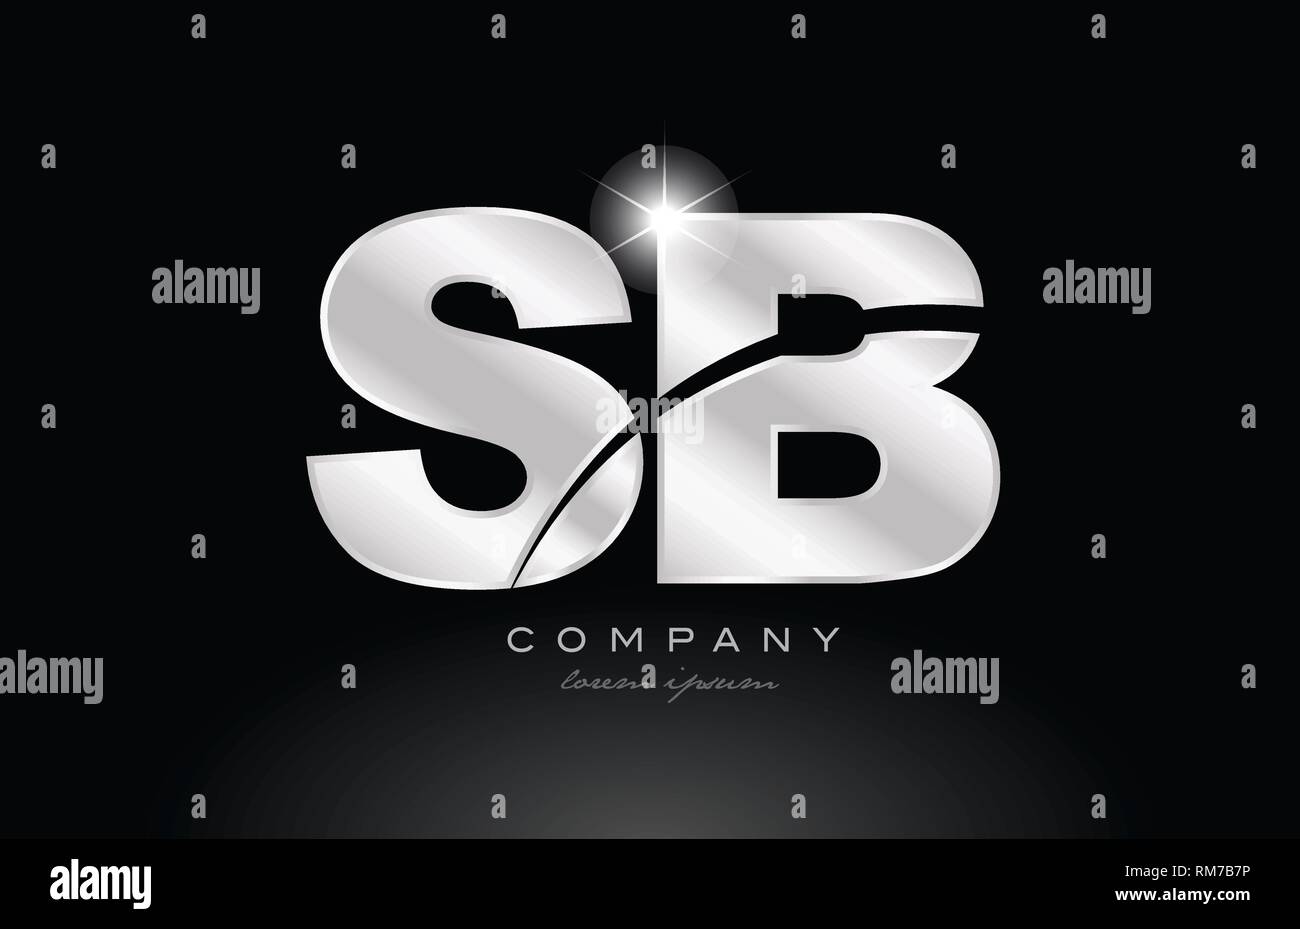 Silber Buchstaben sb s b Metall Kombination Alphabet logo Icon Design mit grauer Farbe auf schwarzem Hintergrund geeignet für ein Unternehmen oder ein Geschäft Stock Vektor